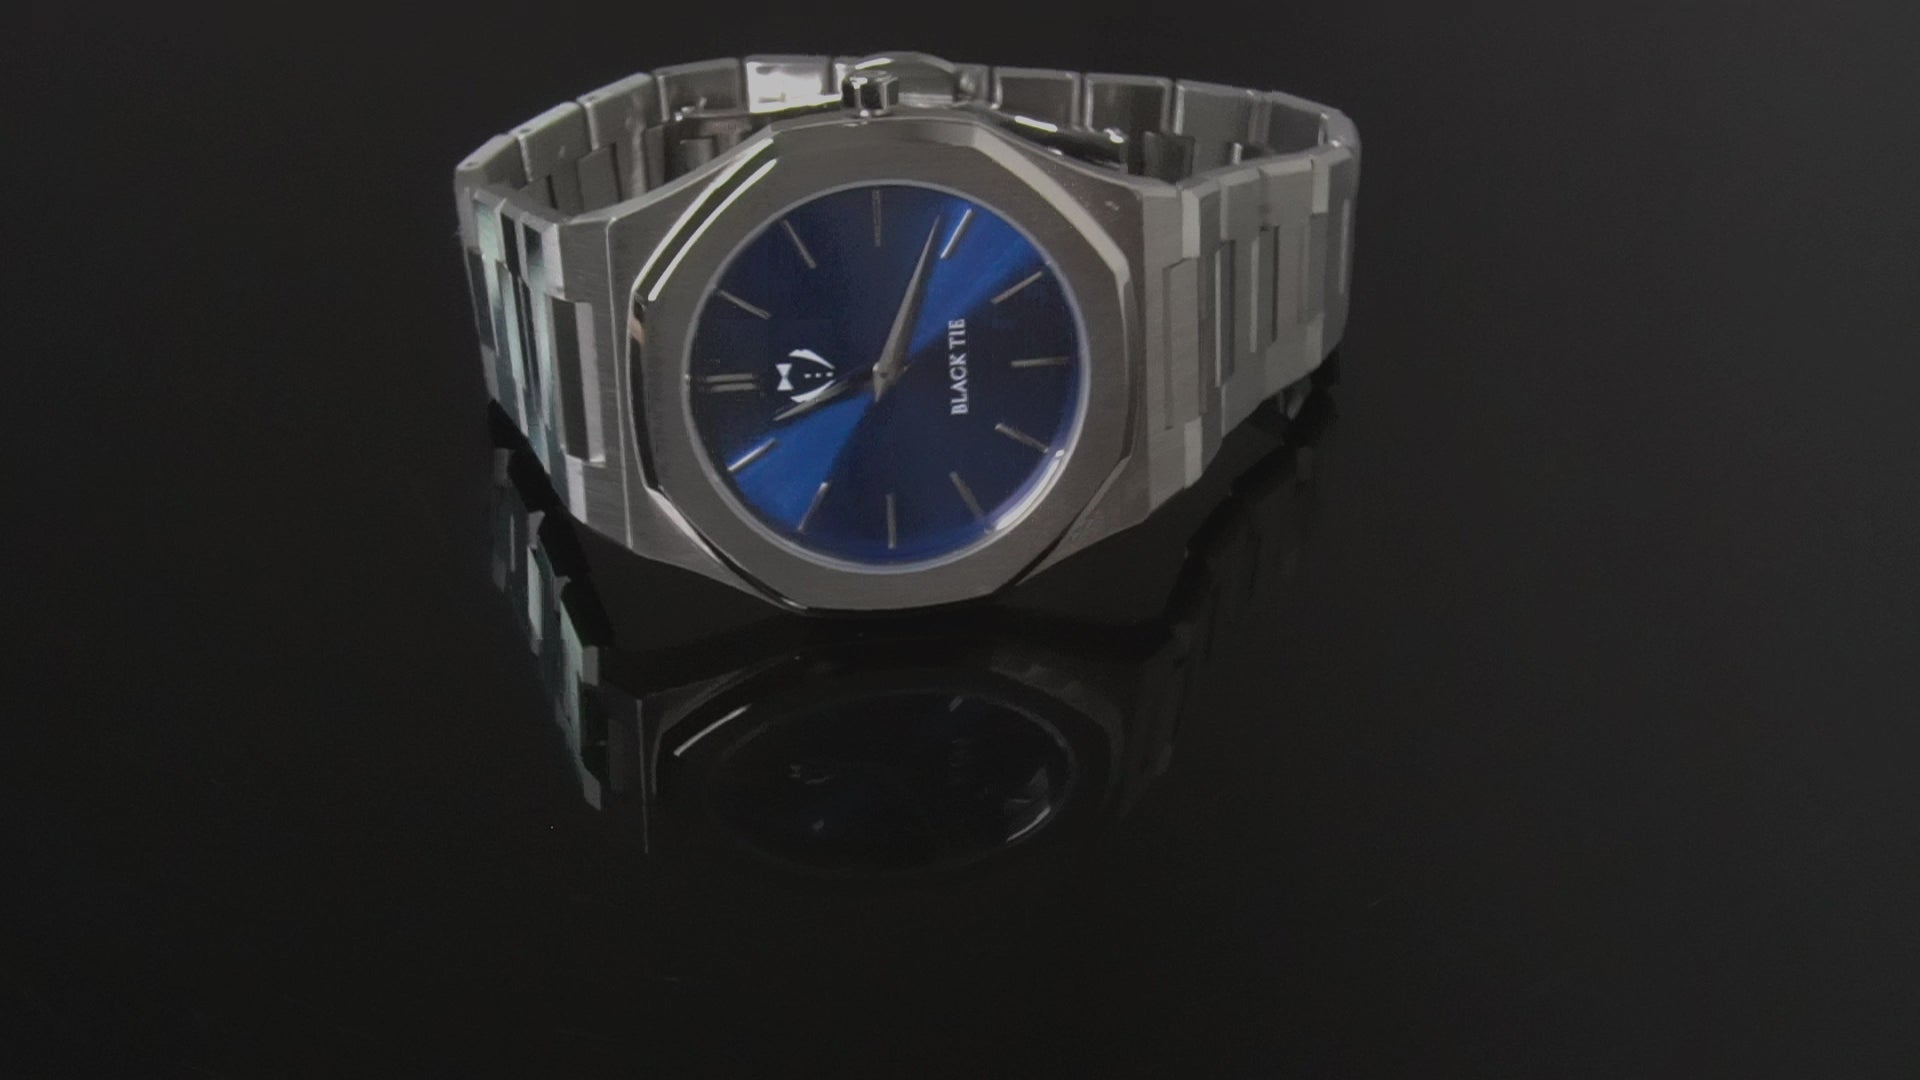 blue steel minimalist watch for men